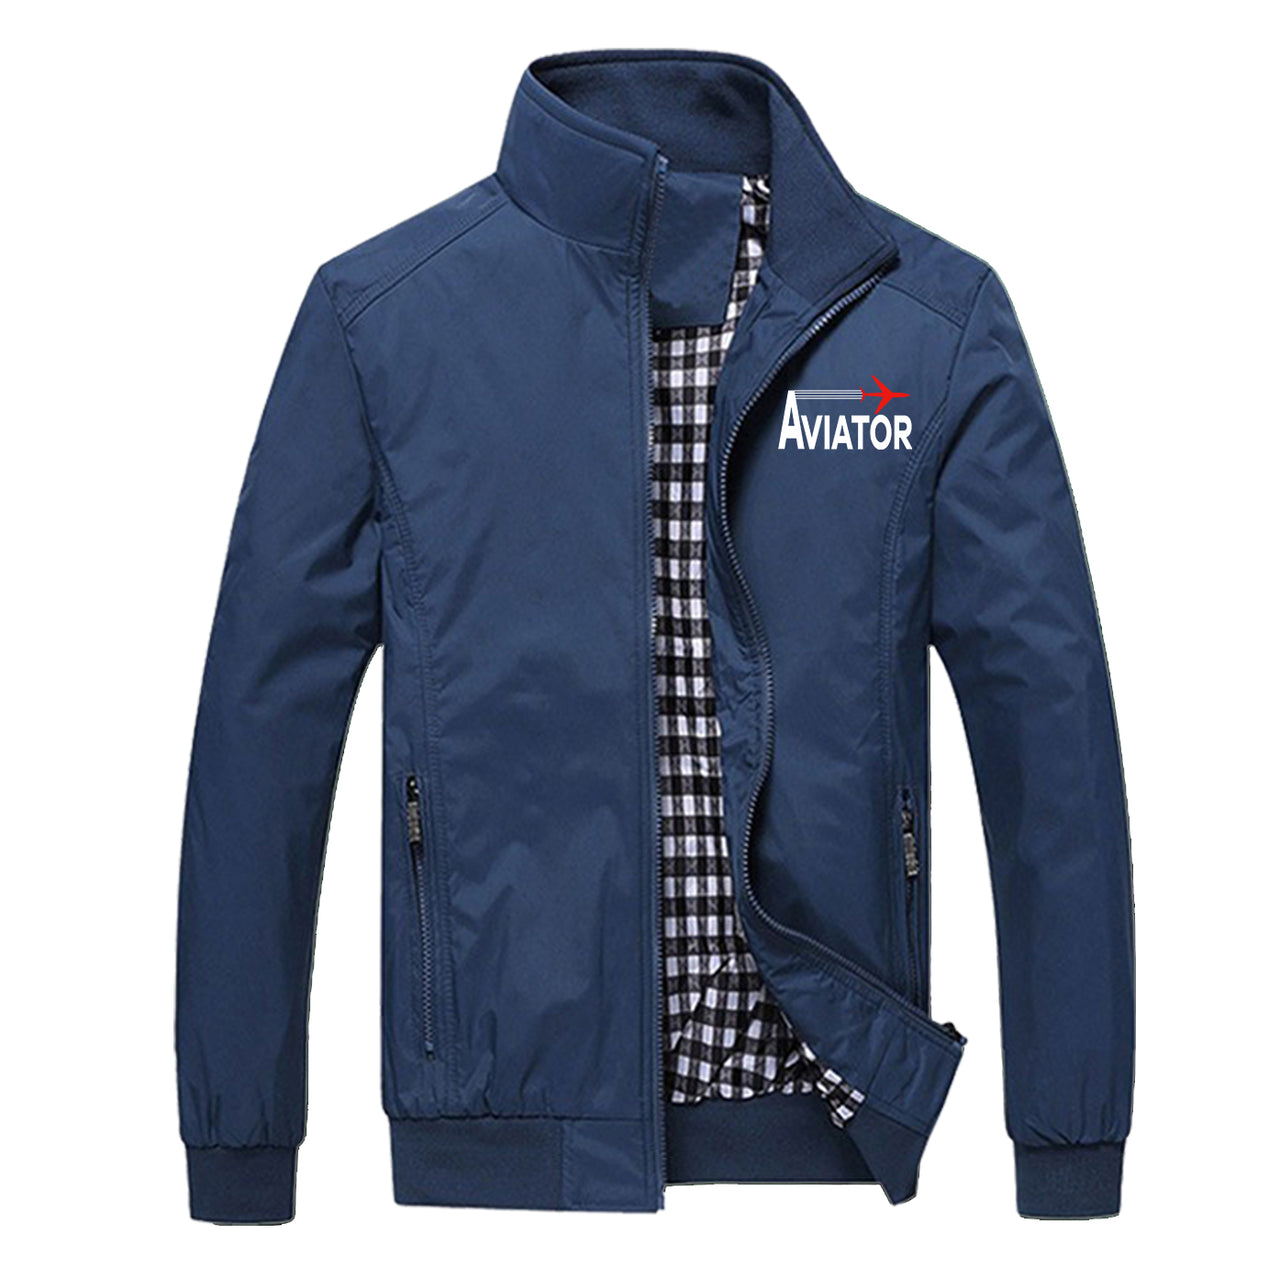 Aviator Designed Stylish Jackets